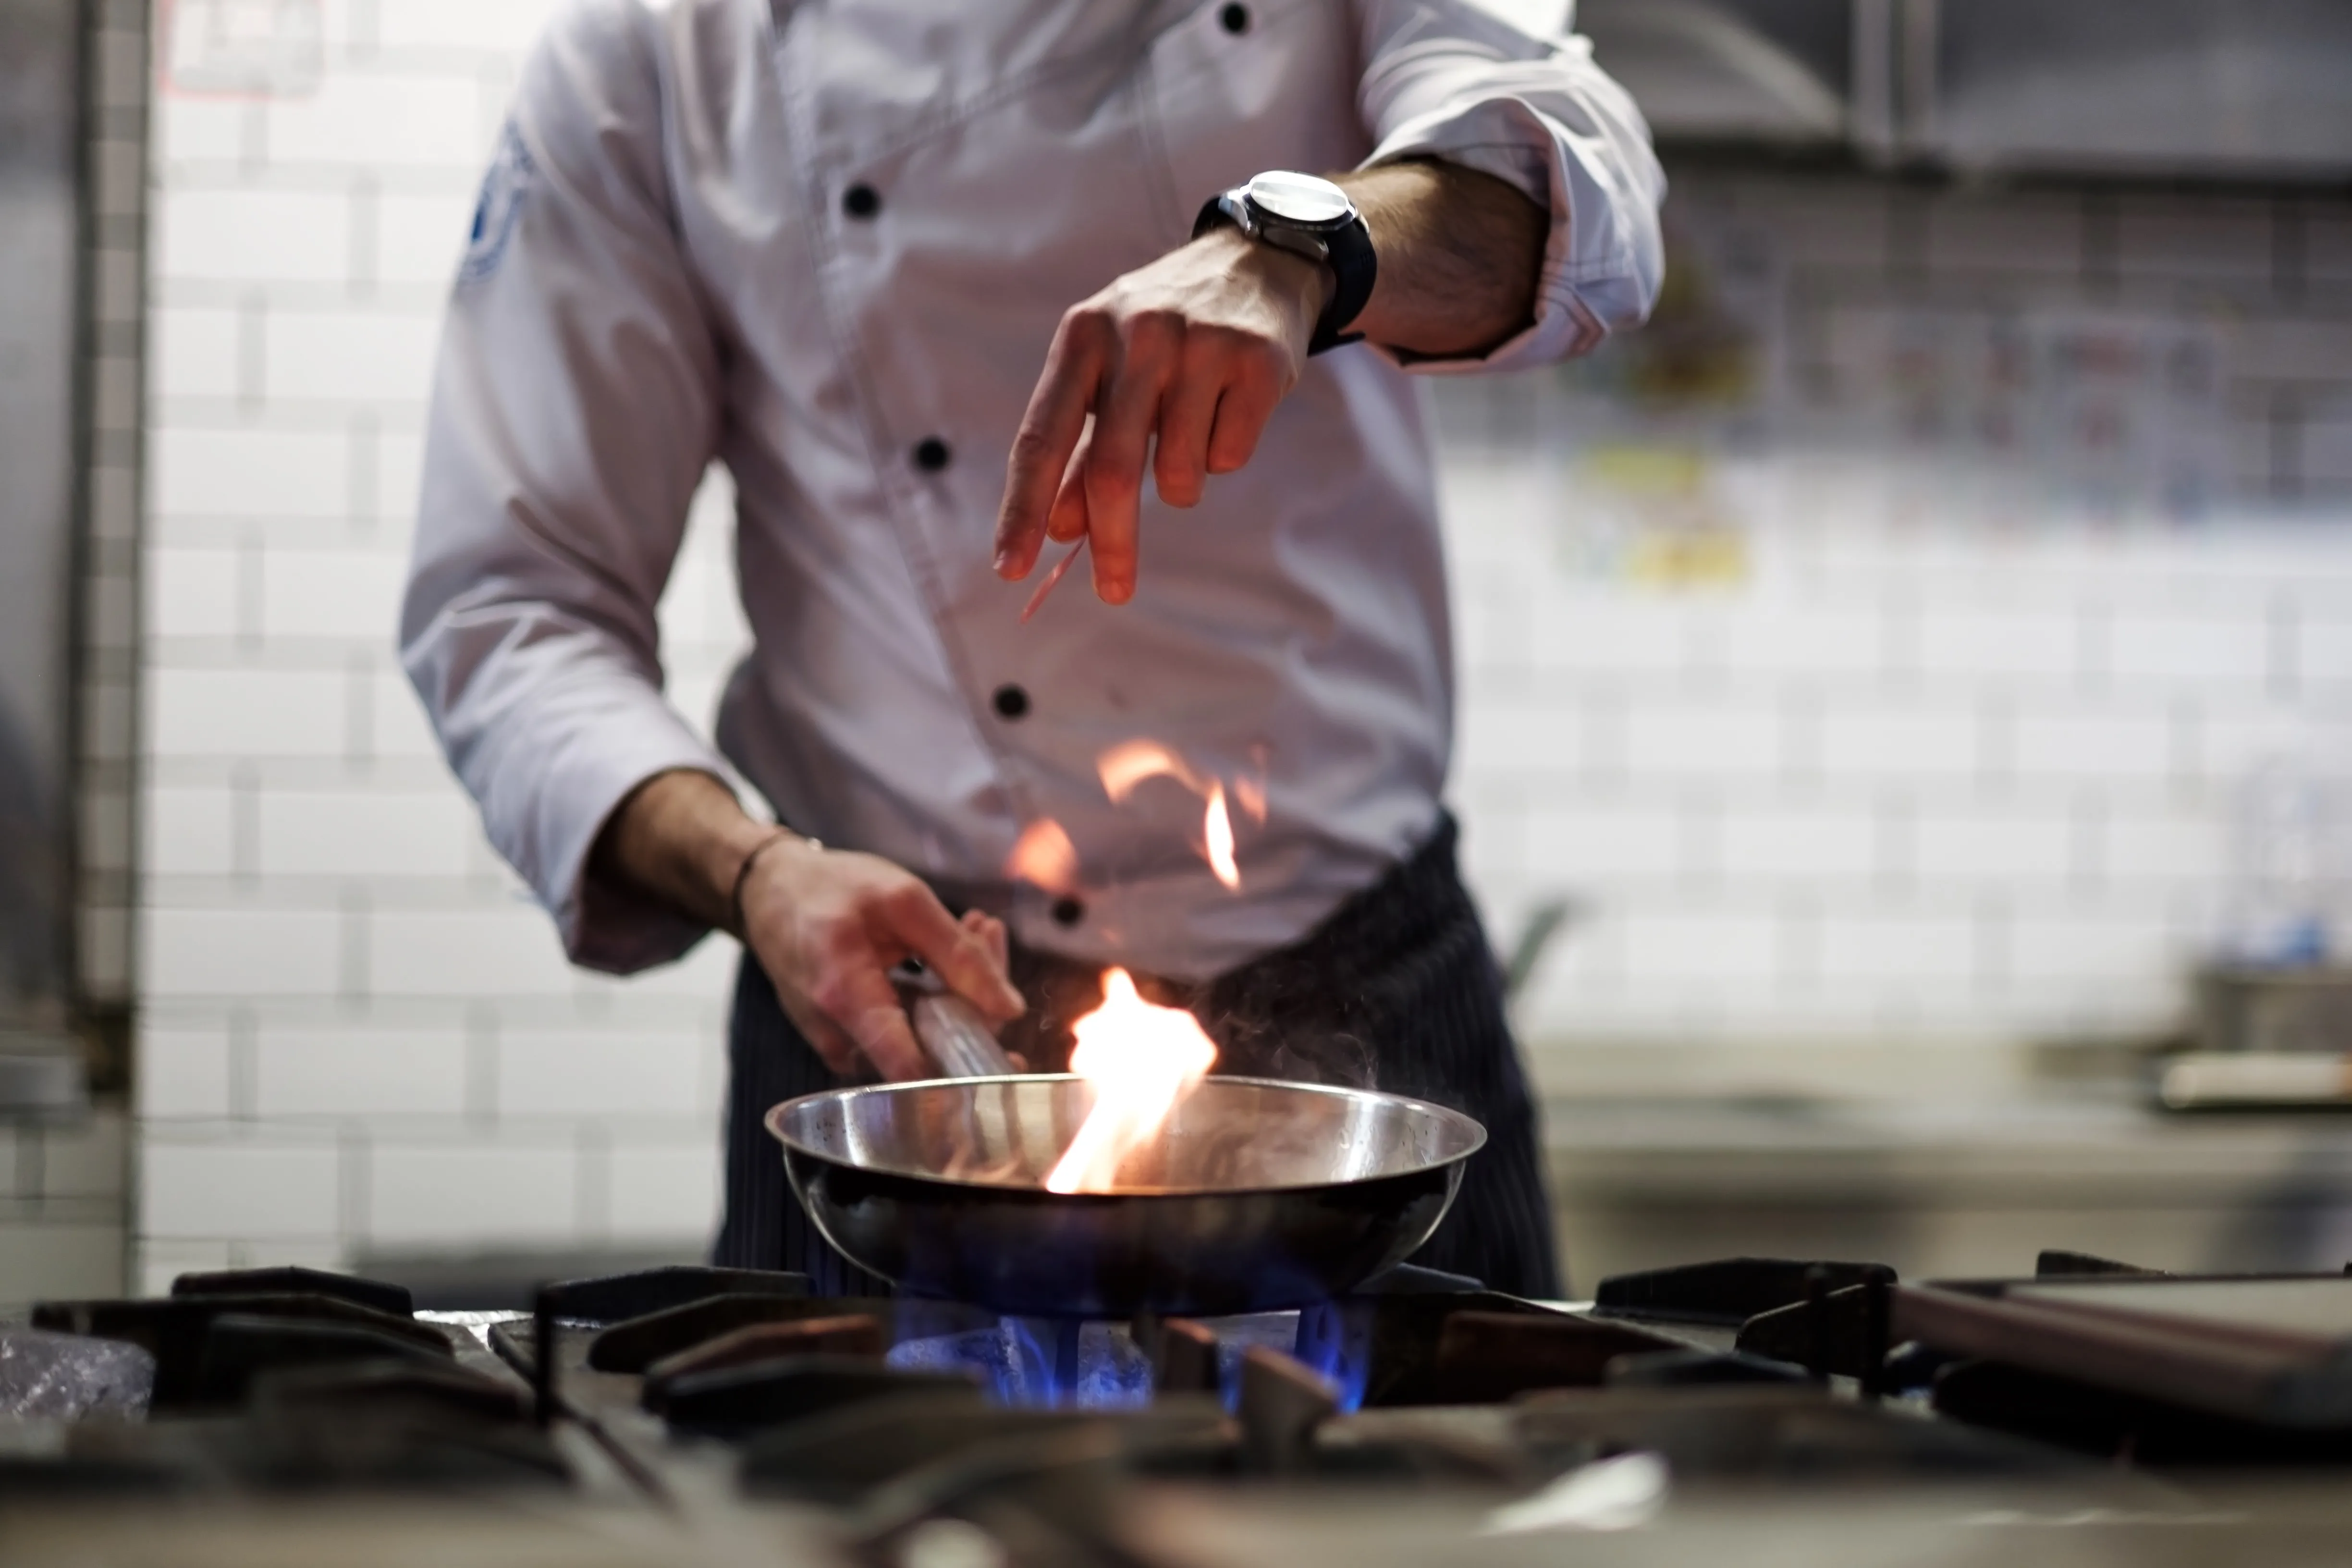 a man cooks cooking deep fryers in a kitchen fire 2023 11 27 04 51 18 utc jpg